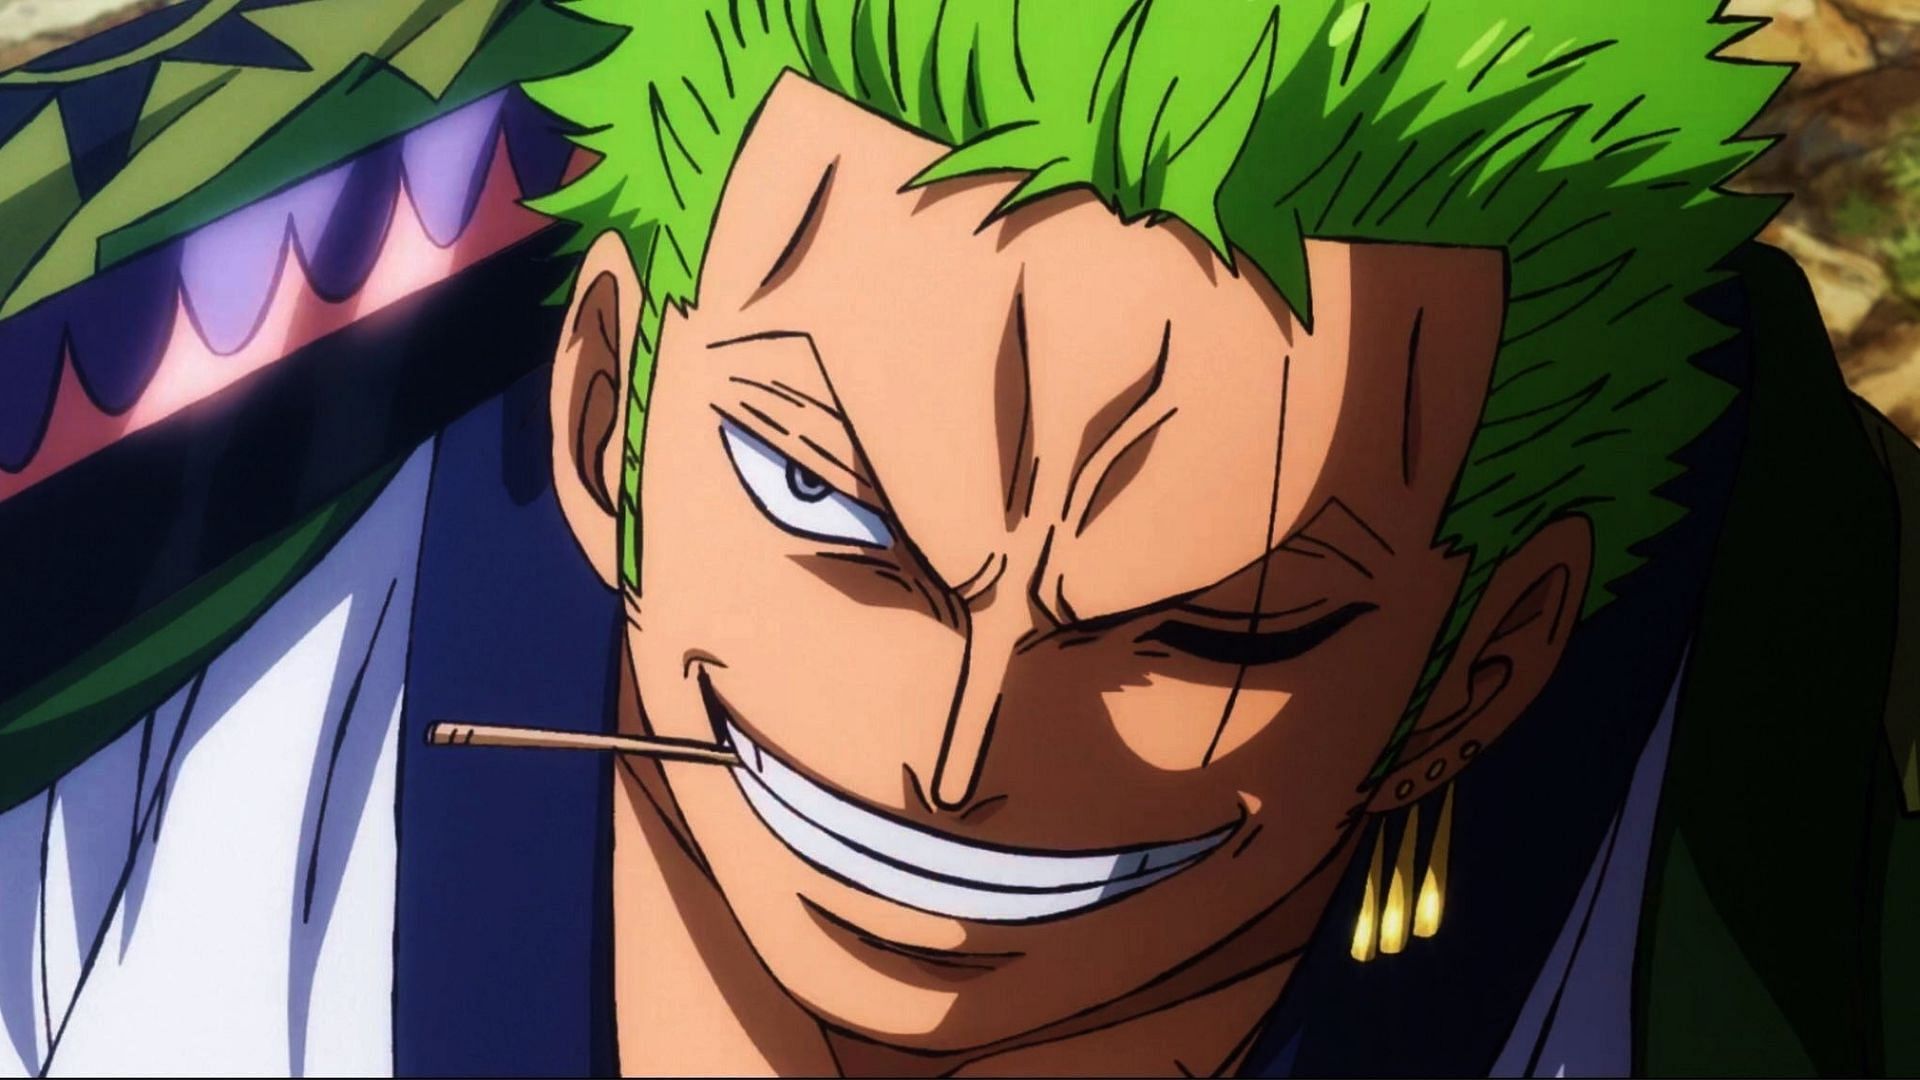 Roronoa Zoro as shown in One Piece anime (Image via Toei Animation)